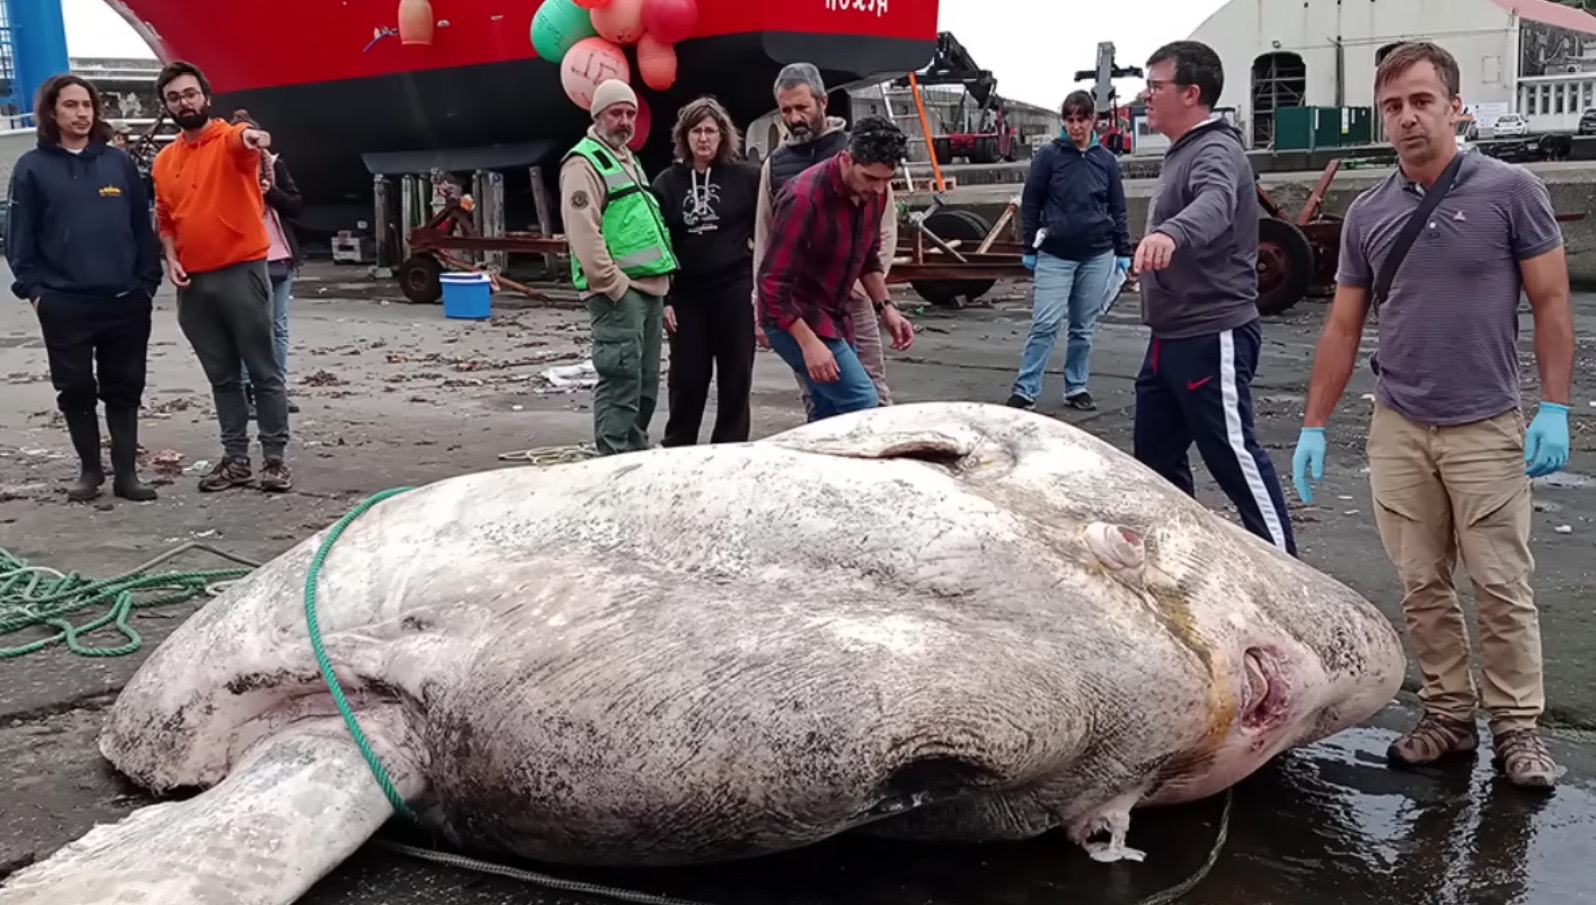 Ikan Gergasi Ditemui Di Portugal, Disahkan Penemuan Yang Pecahkan Rekod Ikan Bertulang Paling Berat Di Dunia - sajagempak.com